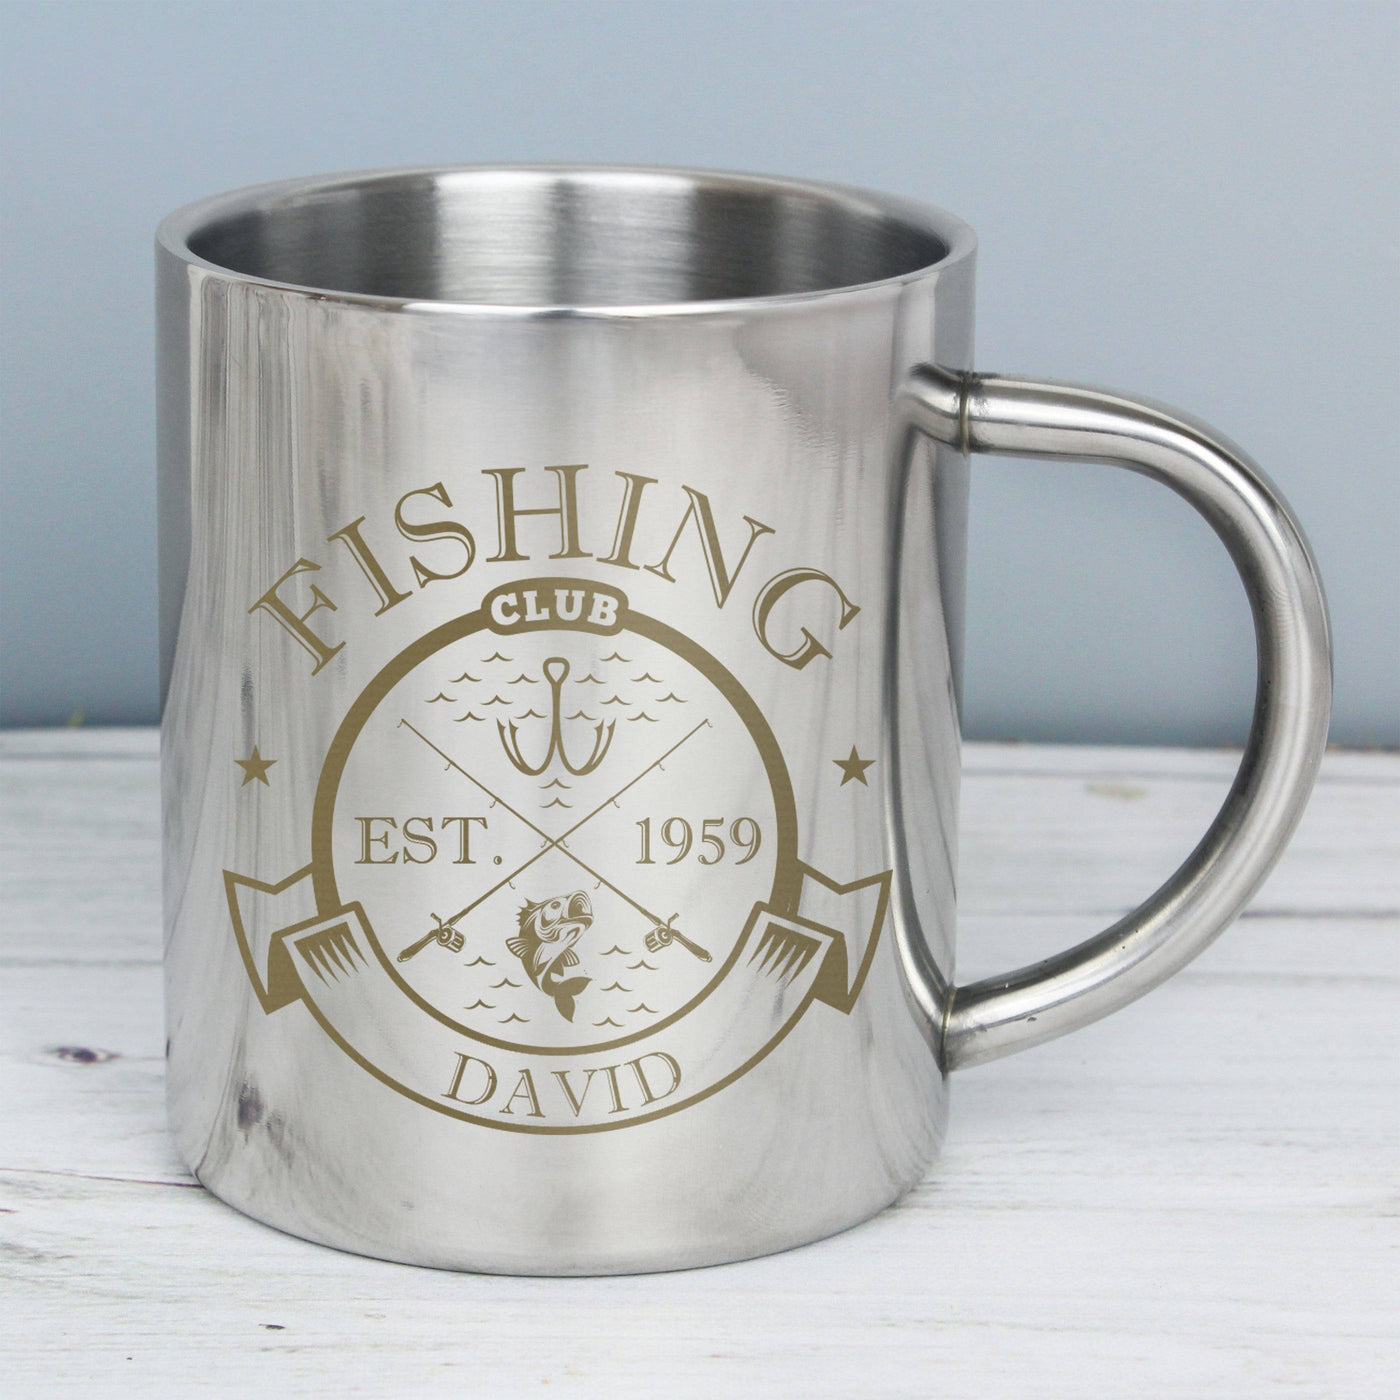 Personalised Fishing Club Stainless Steel Mug - TwoBeeps.co.uk